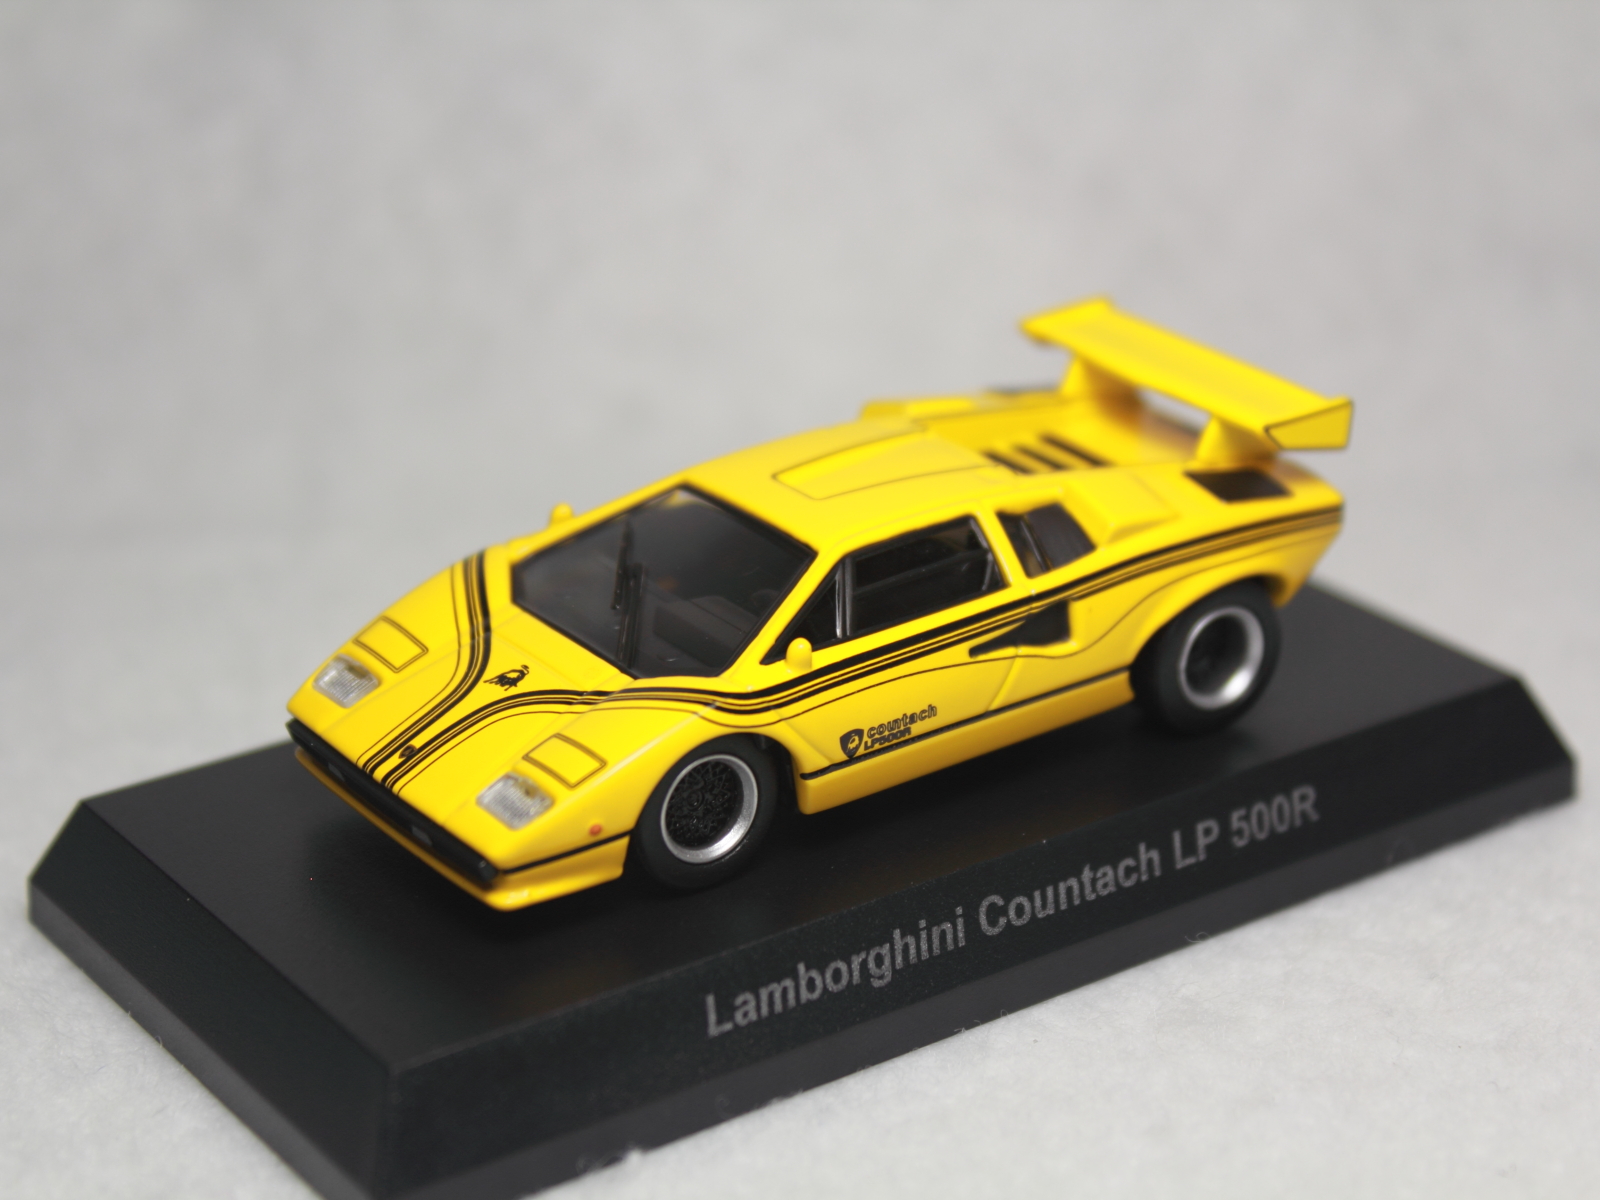 京商 ランボルギーニ カウンタック LP 500R 1/64 Kyosho Lamborghini Countach 1:64